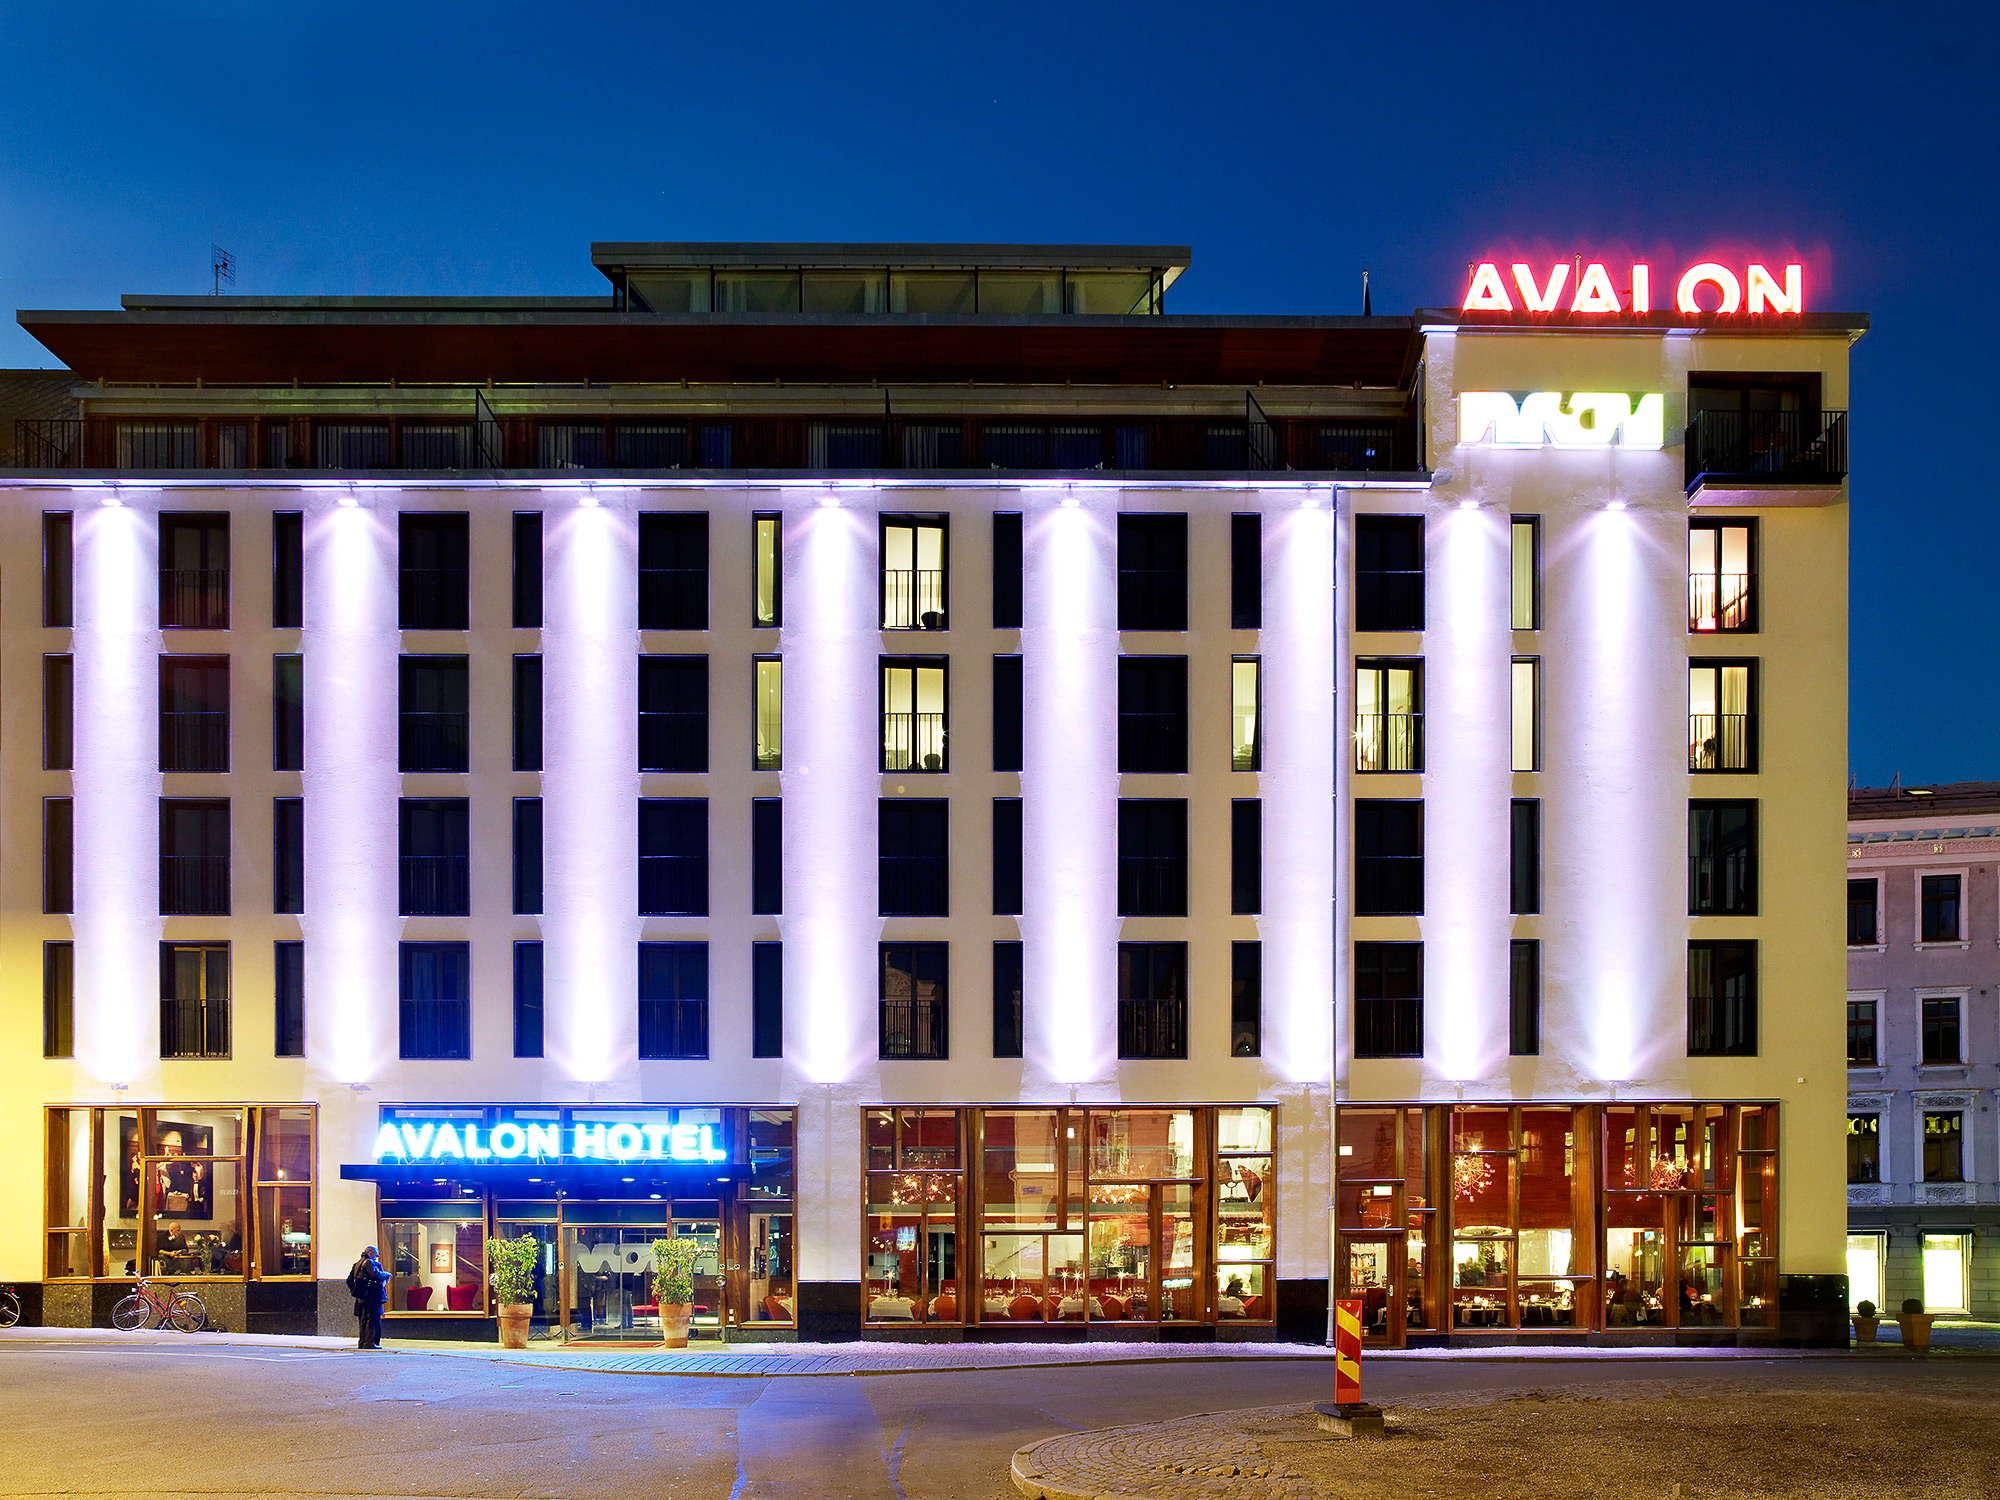  Avalon hotel  Semrén &amp; Månsson 